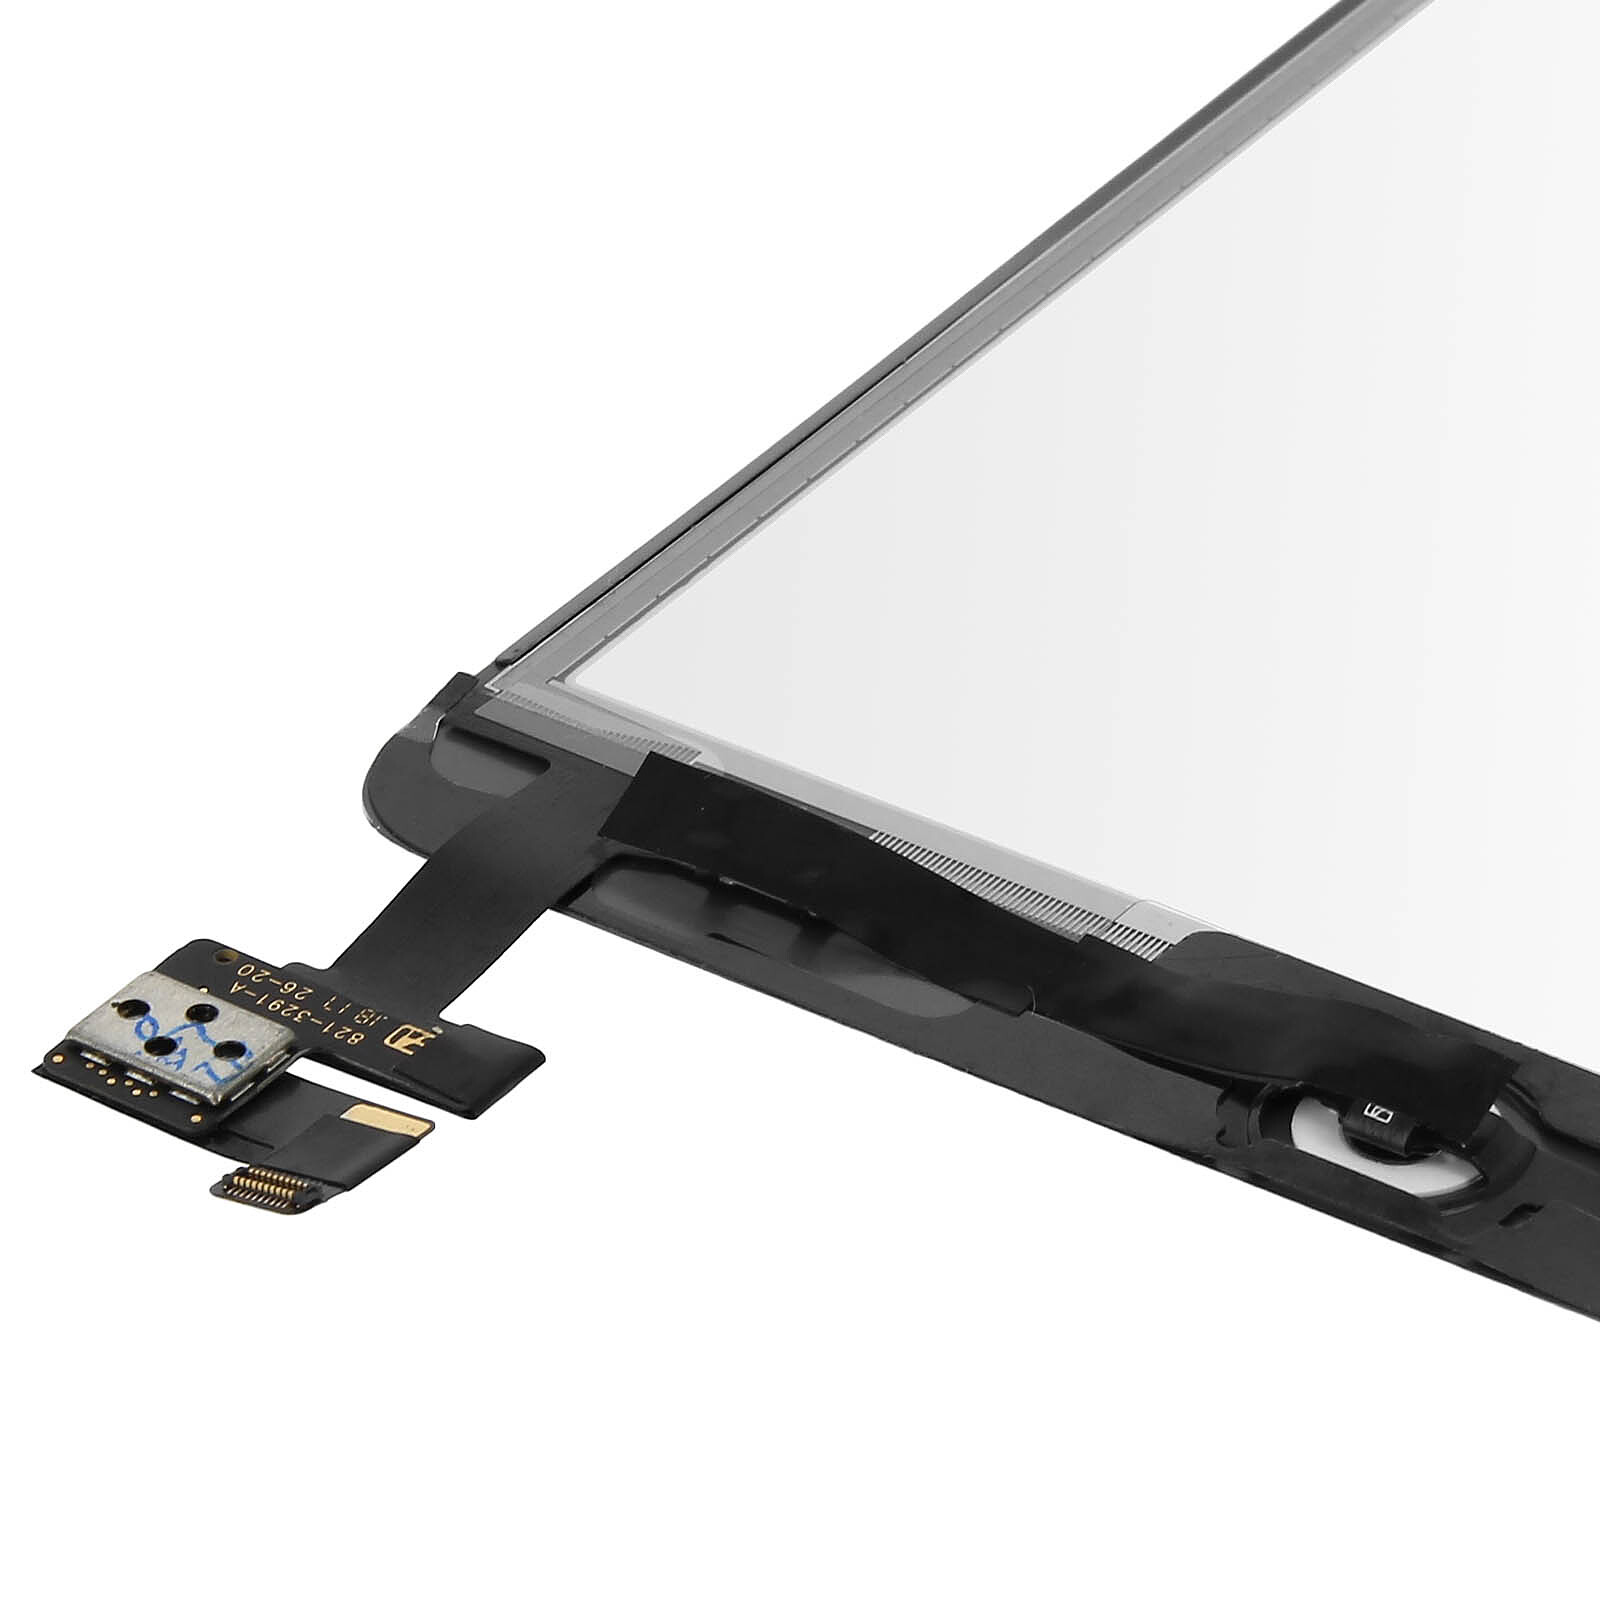 Avizar Ecran Tactile iPad 9.7 2017/iPad 5 Vitre de Remplacement Cadre Blanc  - Ecran téléphone - LDLC